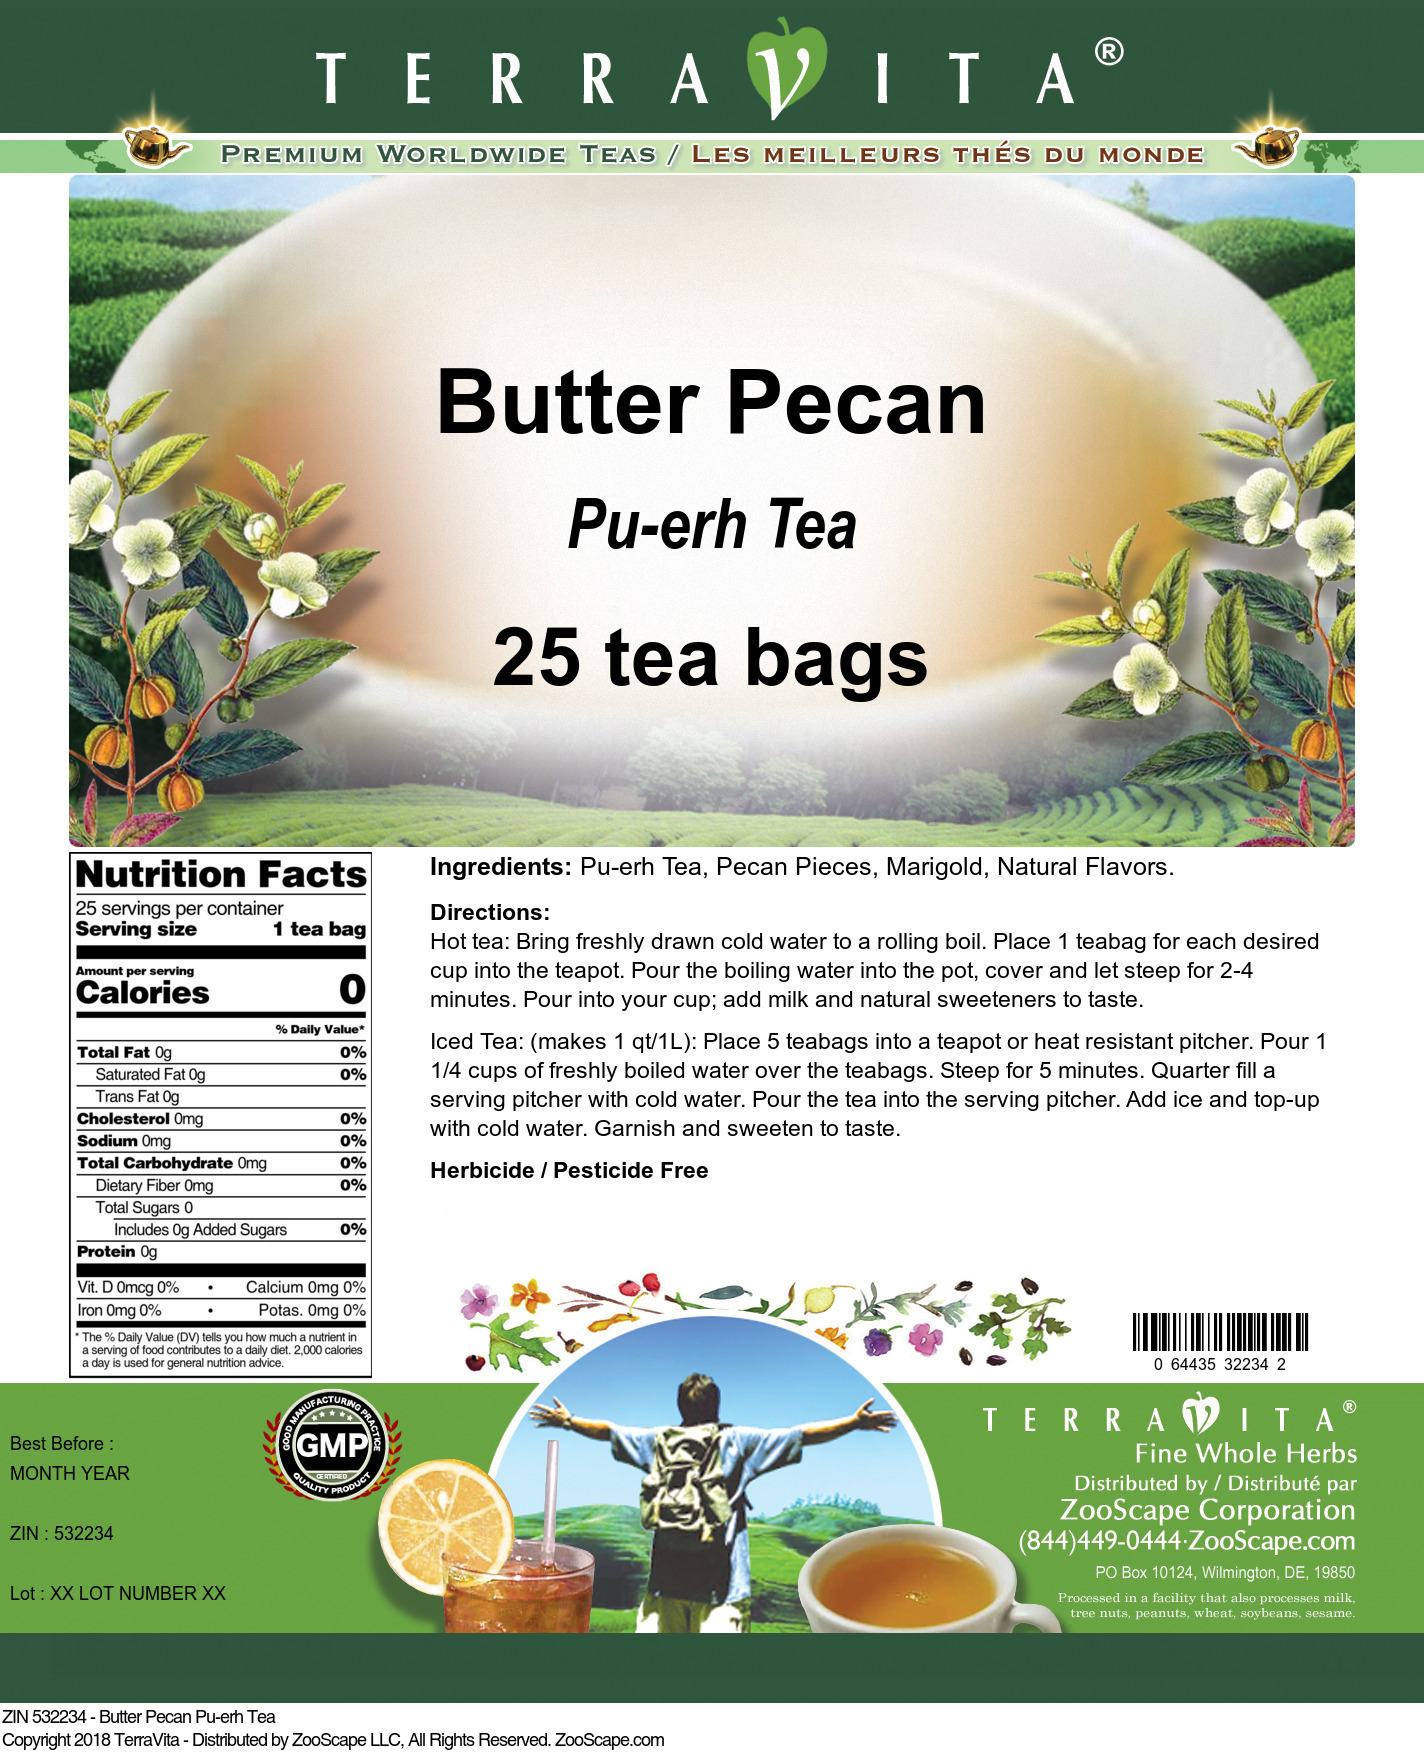 Butter Pecan Pu-erh Tea - Label